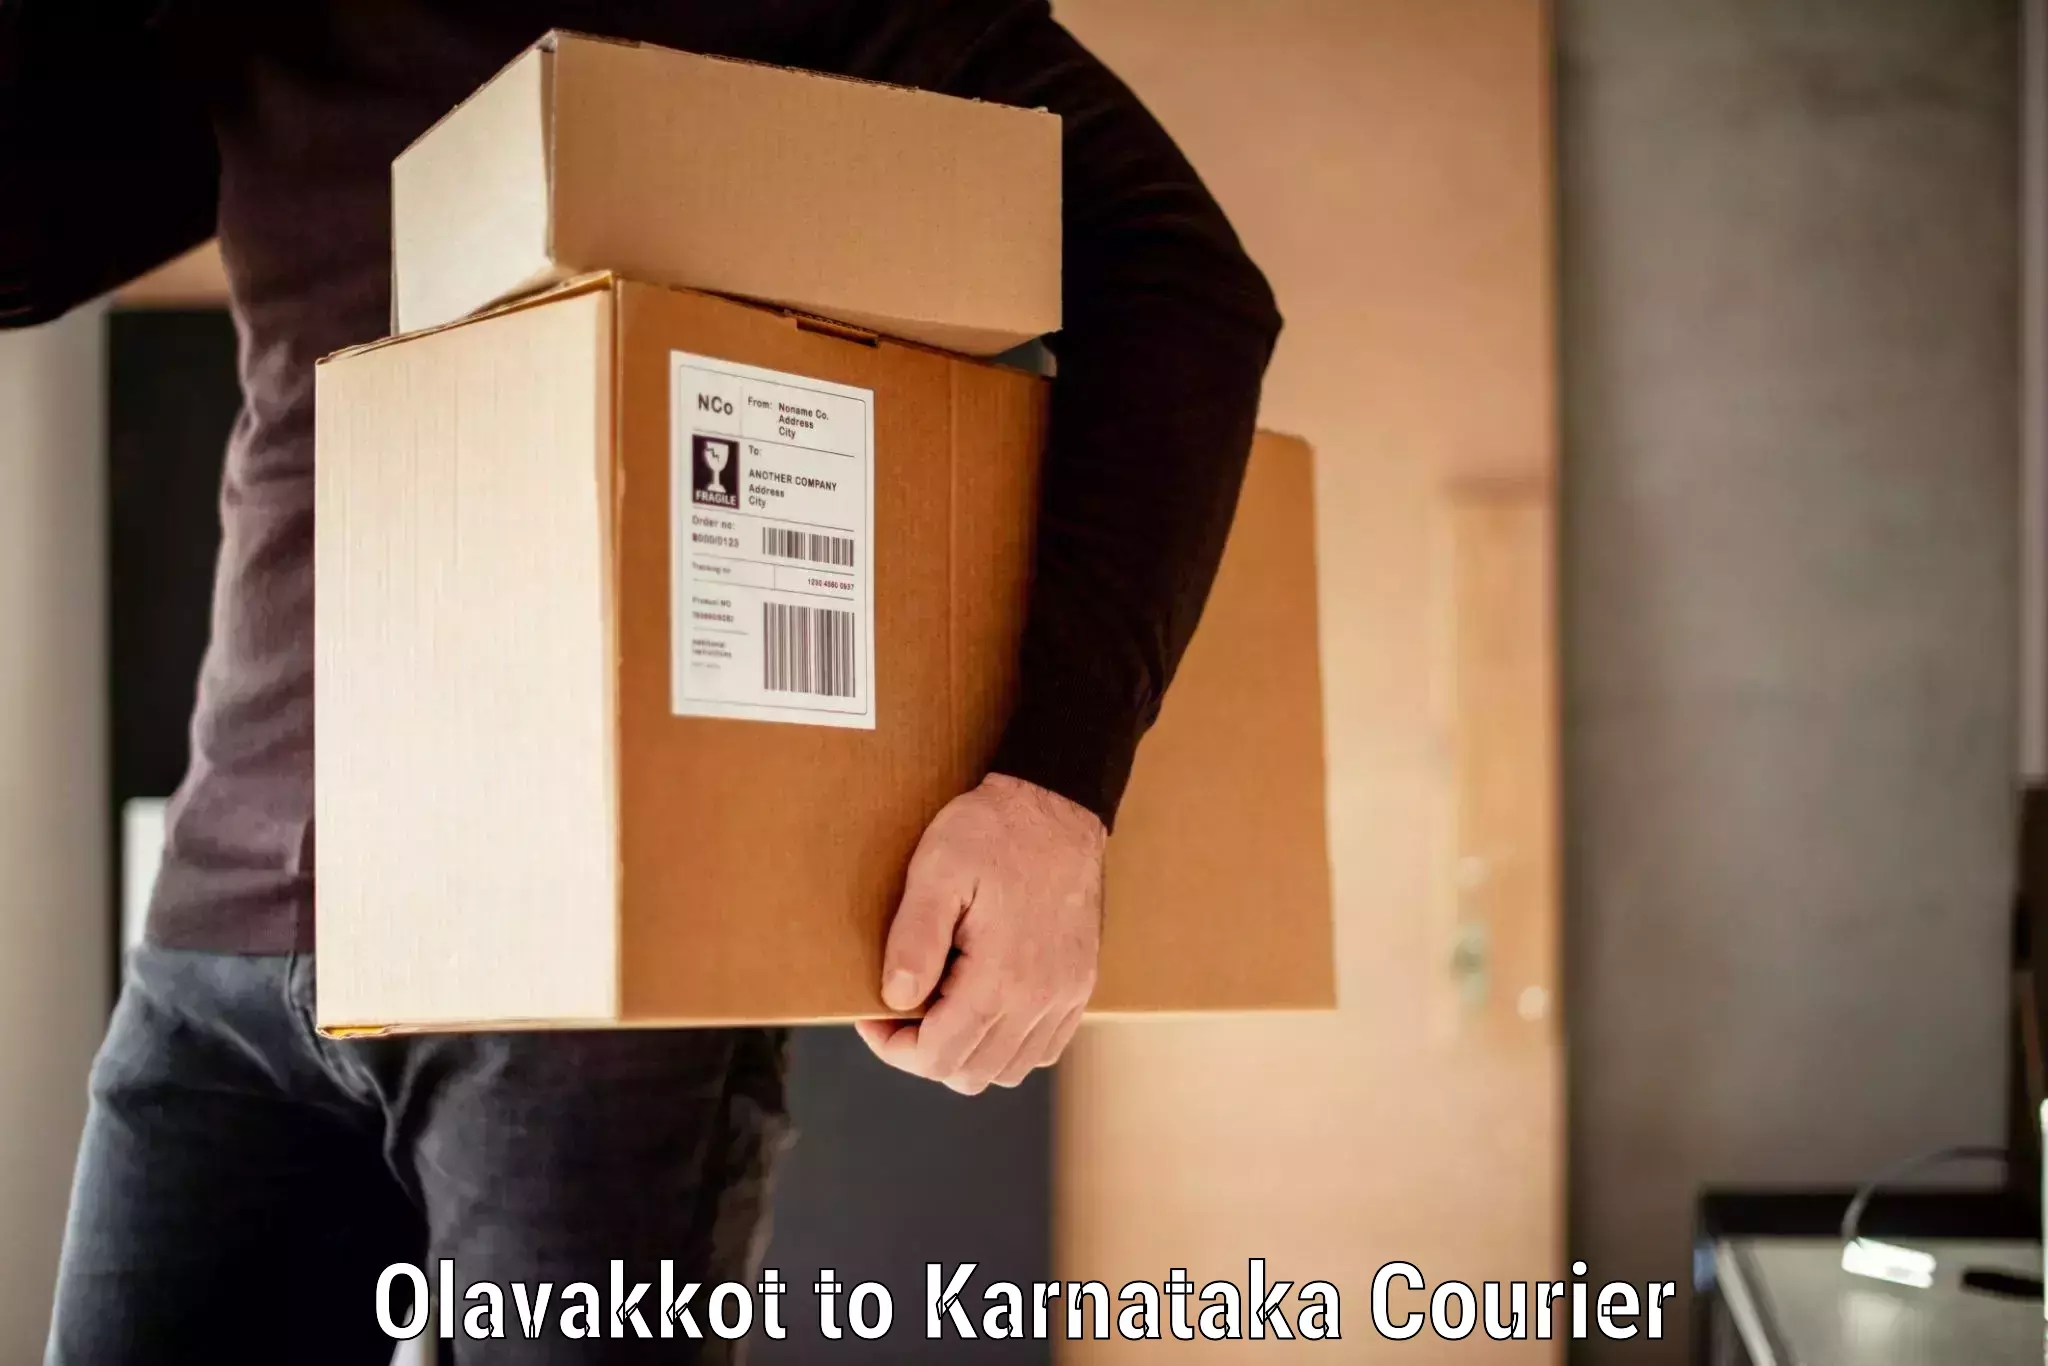 Baggage handling services Olavakkot to Karnataka